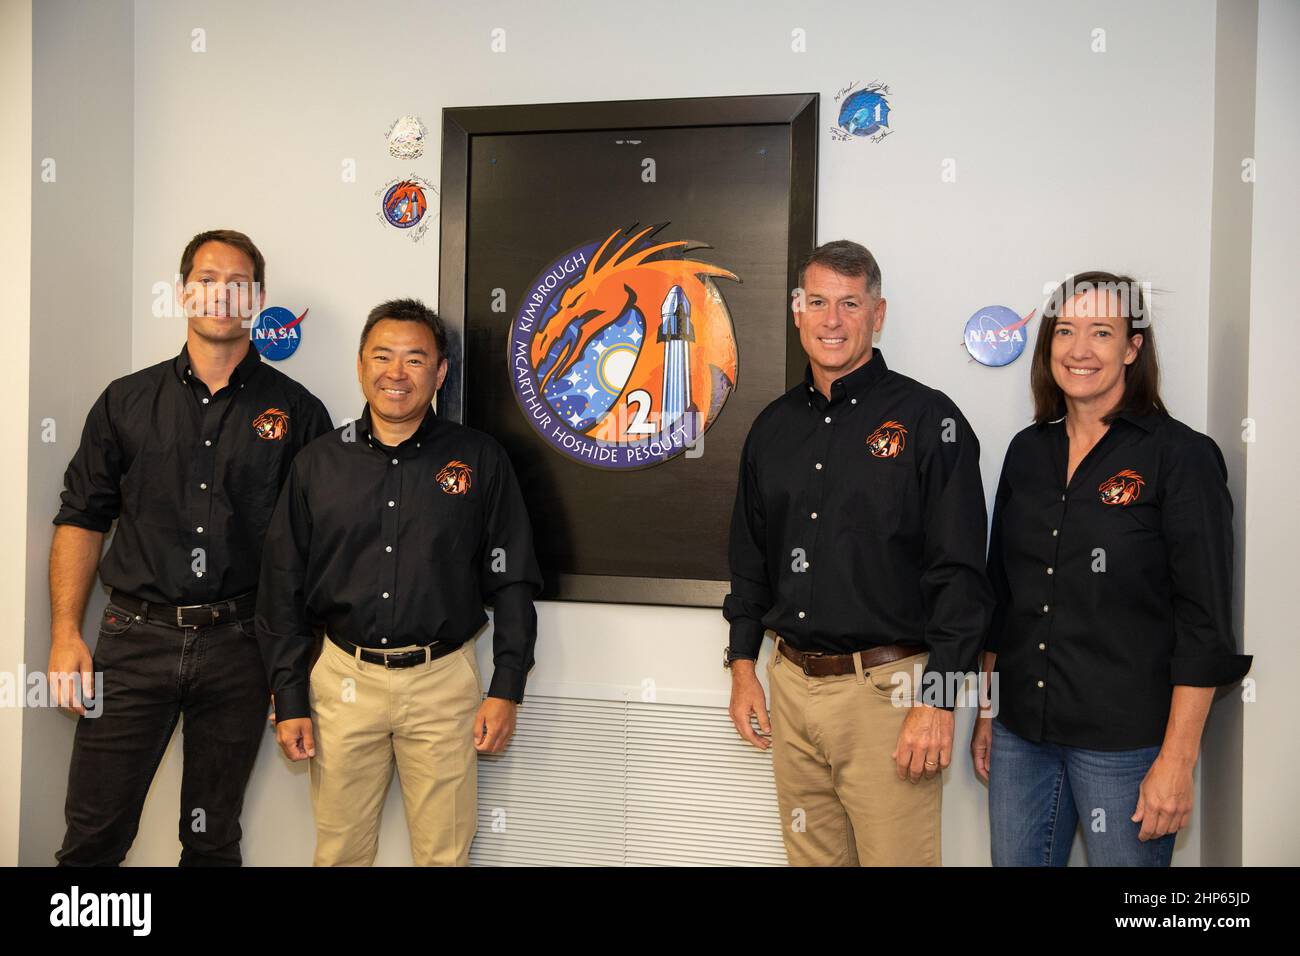 De gauche à droite, l'astronaute Thomas Pesquet de l'ESA, l'astronaute JAXA Akihiko Hoshide et les astronautes de la NASA Shane Kimbrough et Megan McArthur posent dans les quartiers d'équipage des astronautes du bâtiment Neil Armstrong Operations and Checkout du Kennedy Space Center de la NASA en Floride le 23 avril 2021. Les astronautes de l’équipage 2 de la NASA SpaceX auront le petit-déjeuner avant de poursuivre la mission. L’équipage-2 est la deuxième mission d’équipage régulière d’un engin spatial commercial américain avec des astronautes à la Station spatiale internationale dans le cadre du programme d’équipage commercial de la NASA. Le SpaceX Crew Dragon Endeavour sera lancé au sommet de l'entreprise Banque D'Images